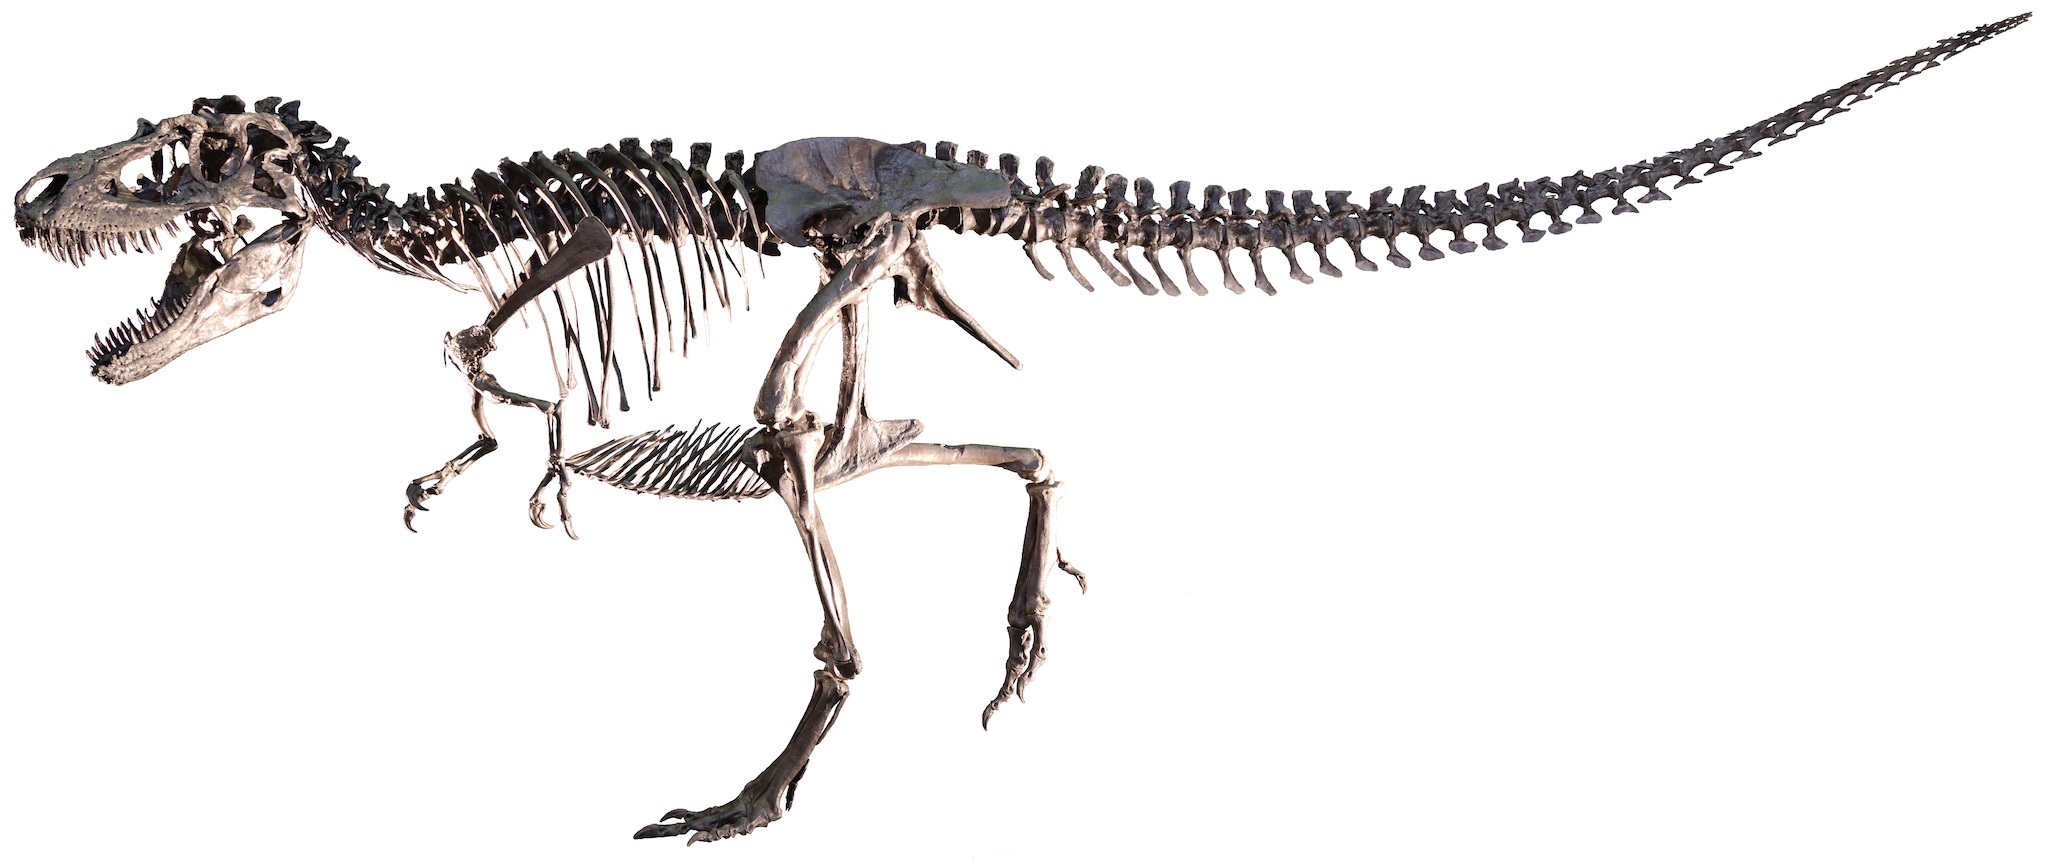 DinoScience 恐竜科学博～ララミディア大陸の恐竜物語～